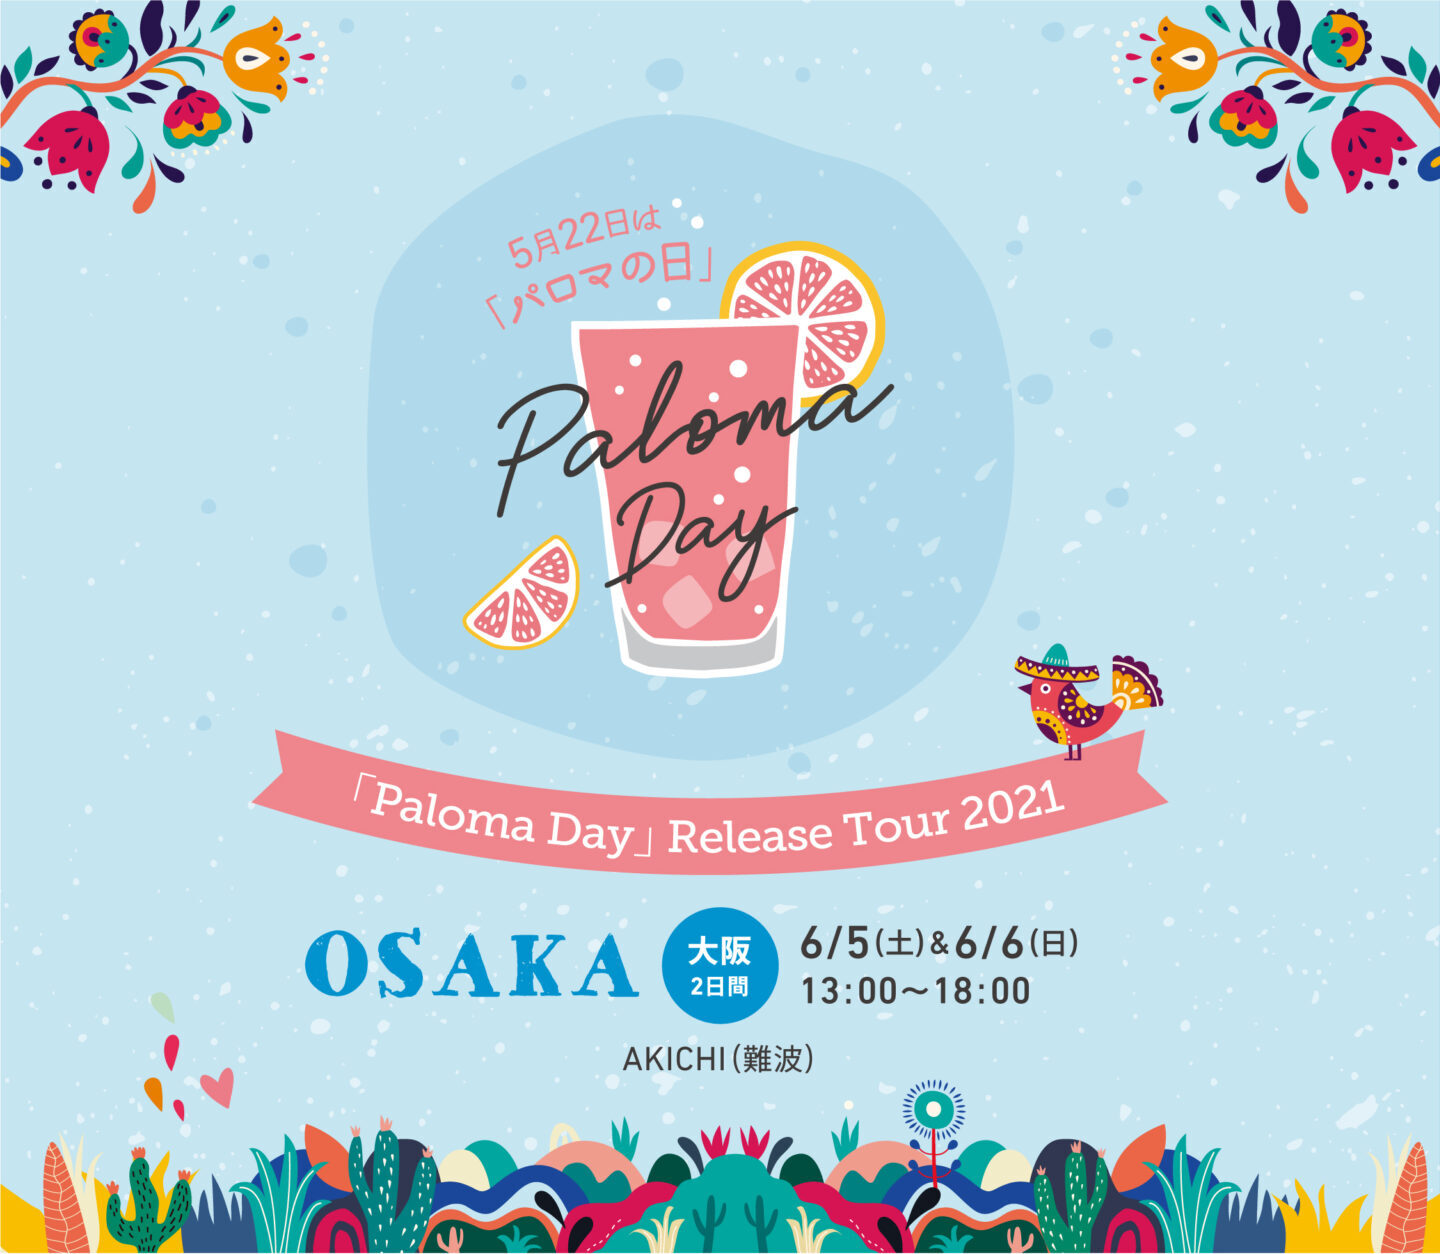 7月3・4日(土日)に大阪・難波のAKICHIでパロマの日記念企画Paloma Day 2021 Release Tour in OSAKAを開催